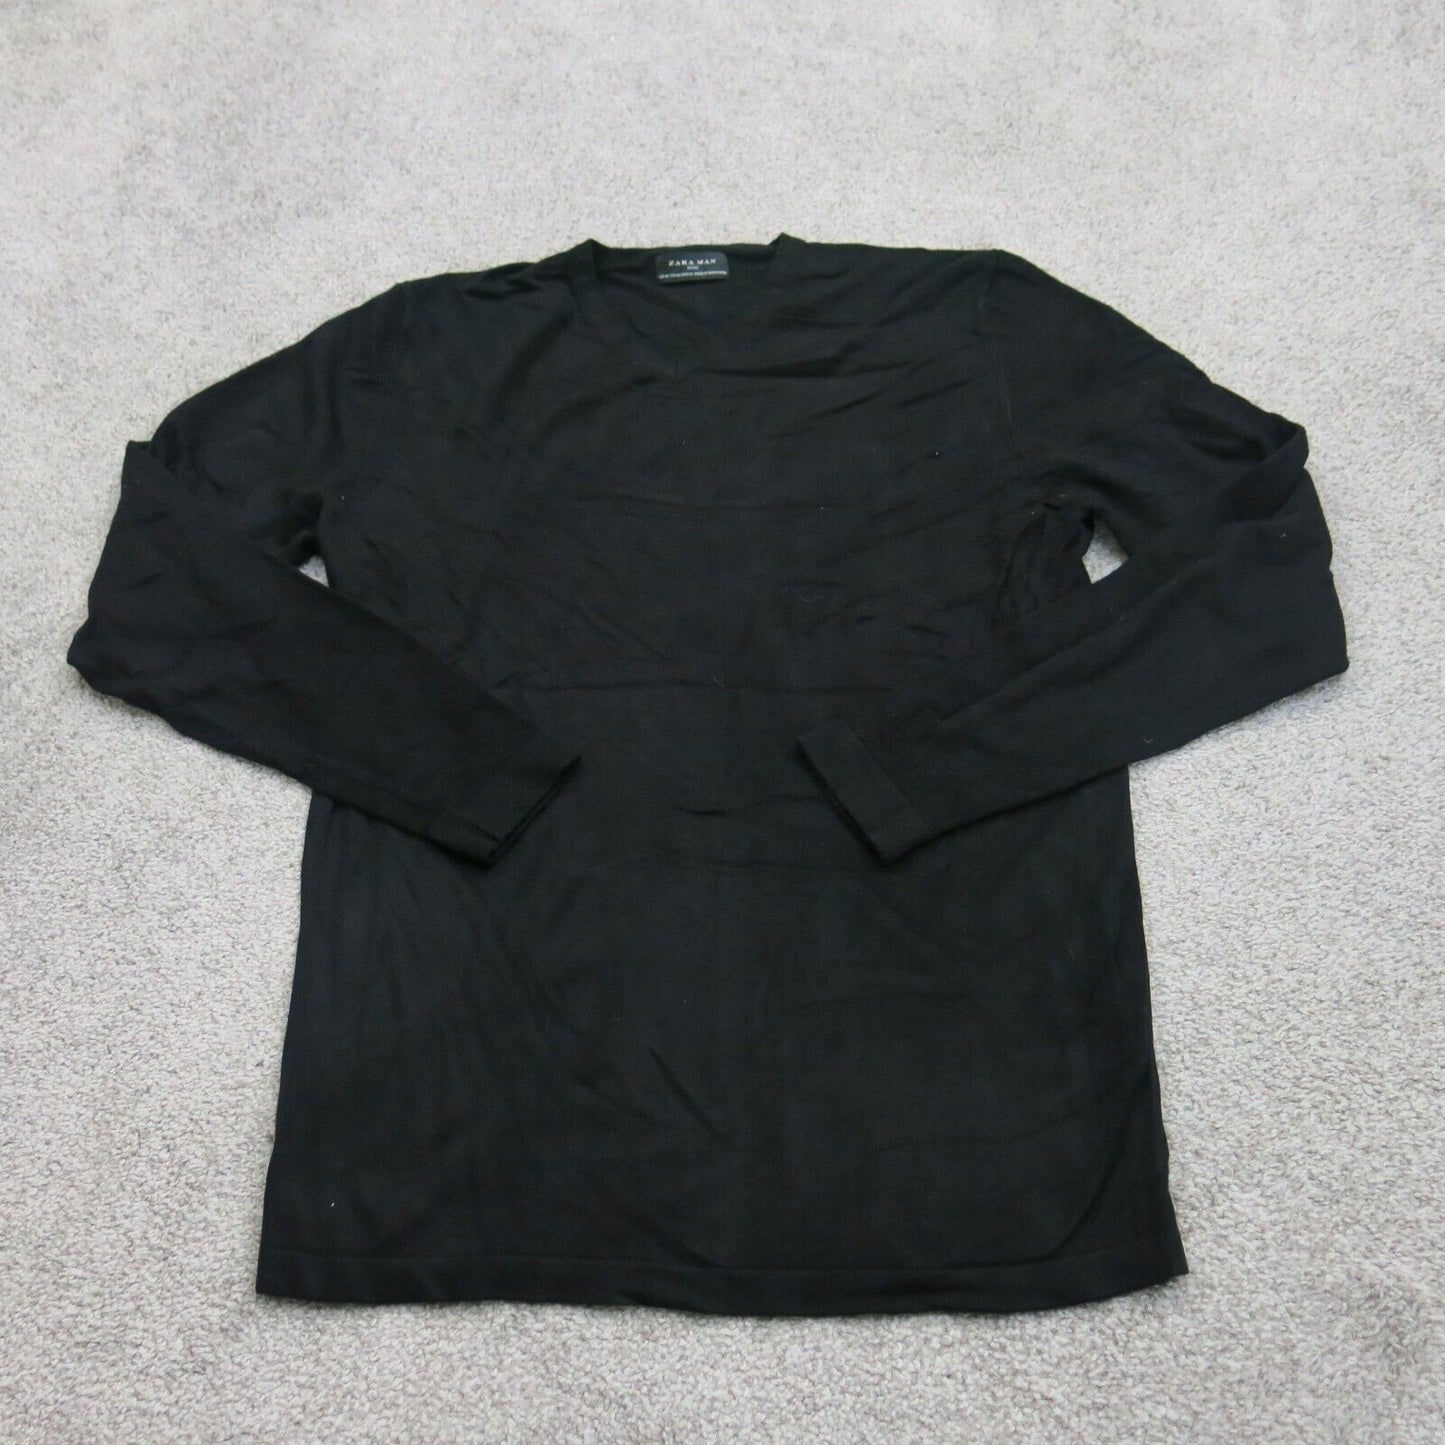 Zara Man Basic Men Pullover Sweatshirt V Neck Long Sleeve Solid Black SZ Medium